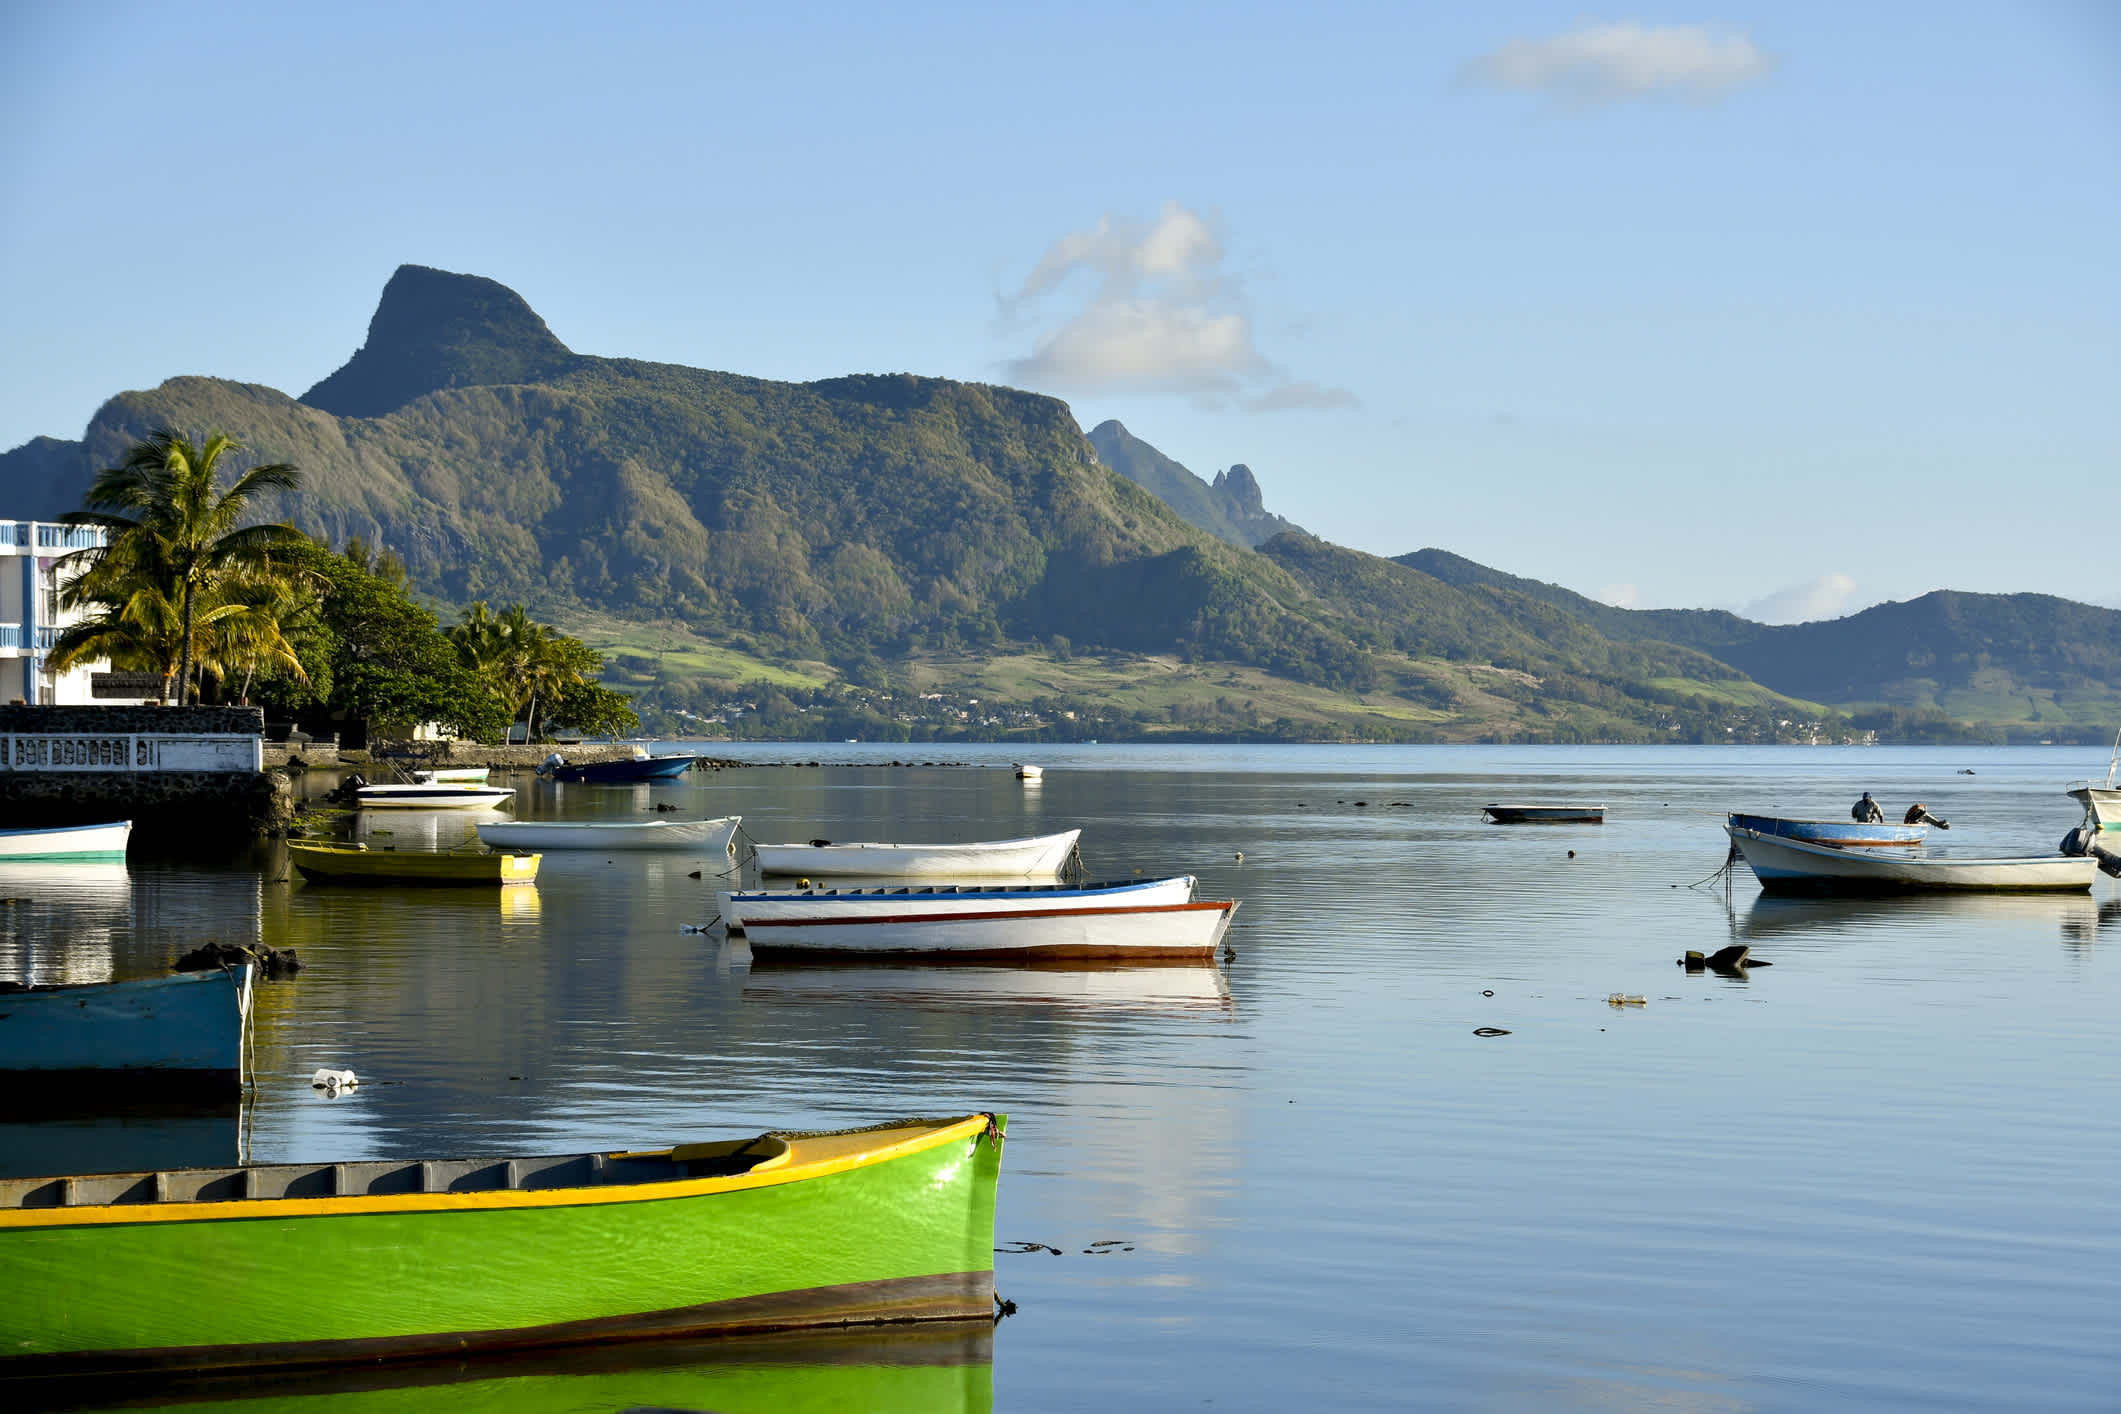 Segelboote in der Lagune vor Mountain Lion, Mahebourg Lagune, Mauritius.